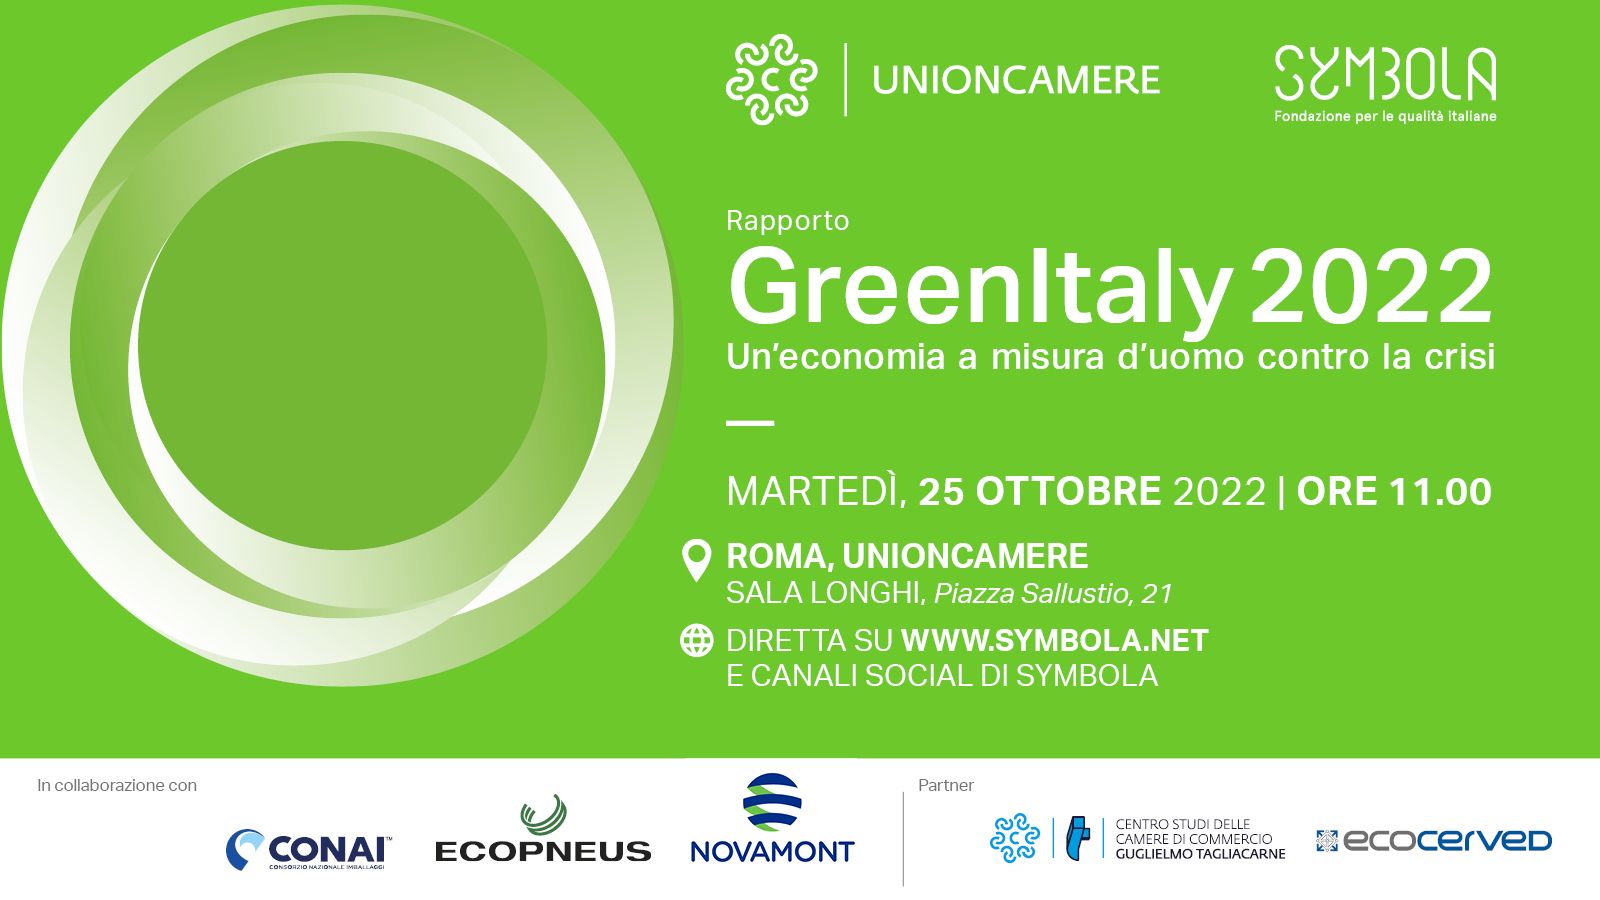 Greenitaly 2022 - presentazione rapporto Centro Studi Tagliacarne